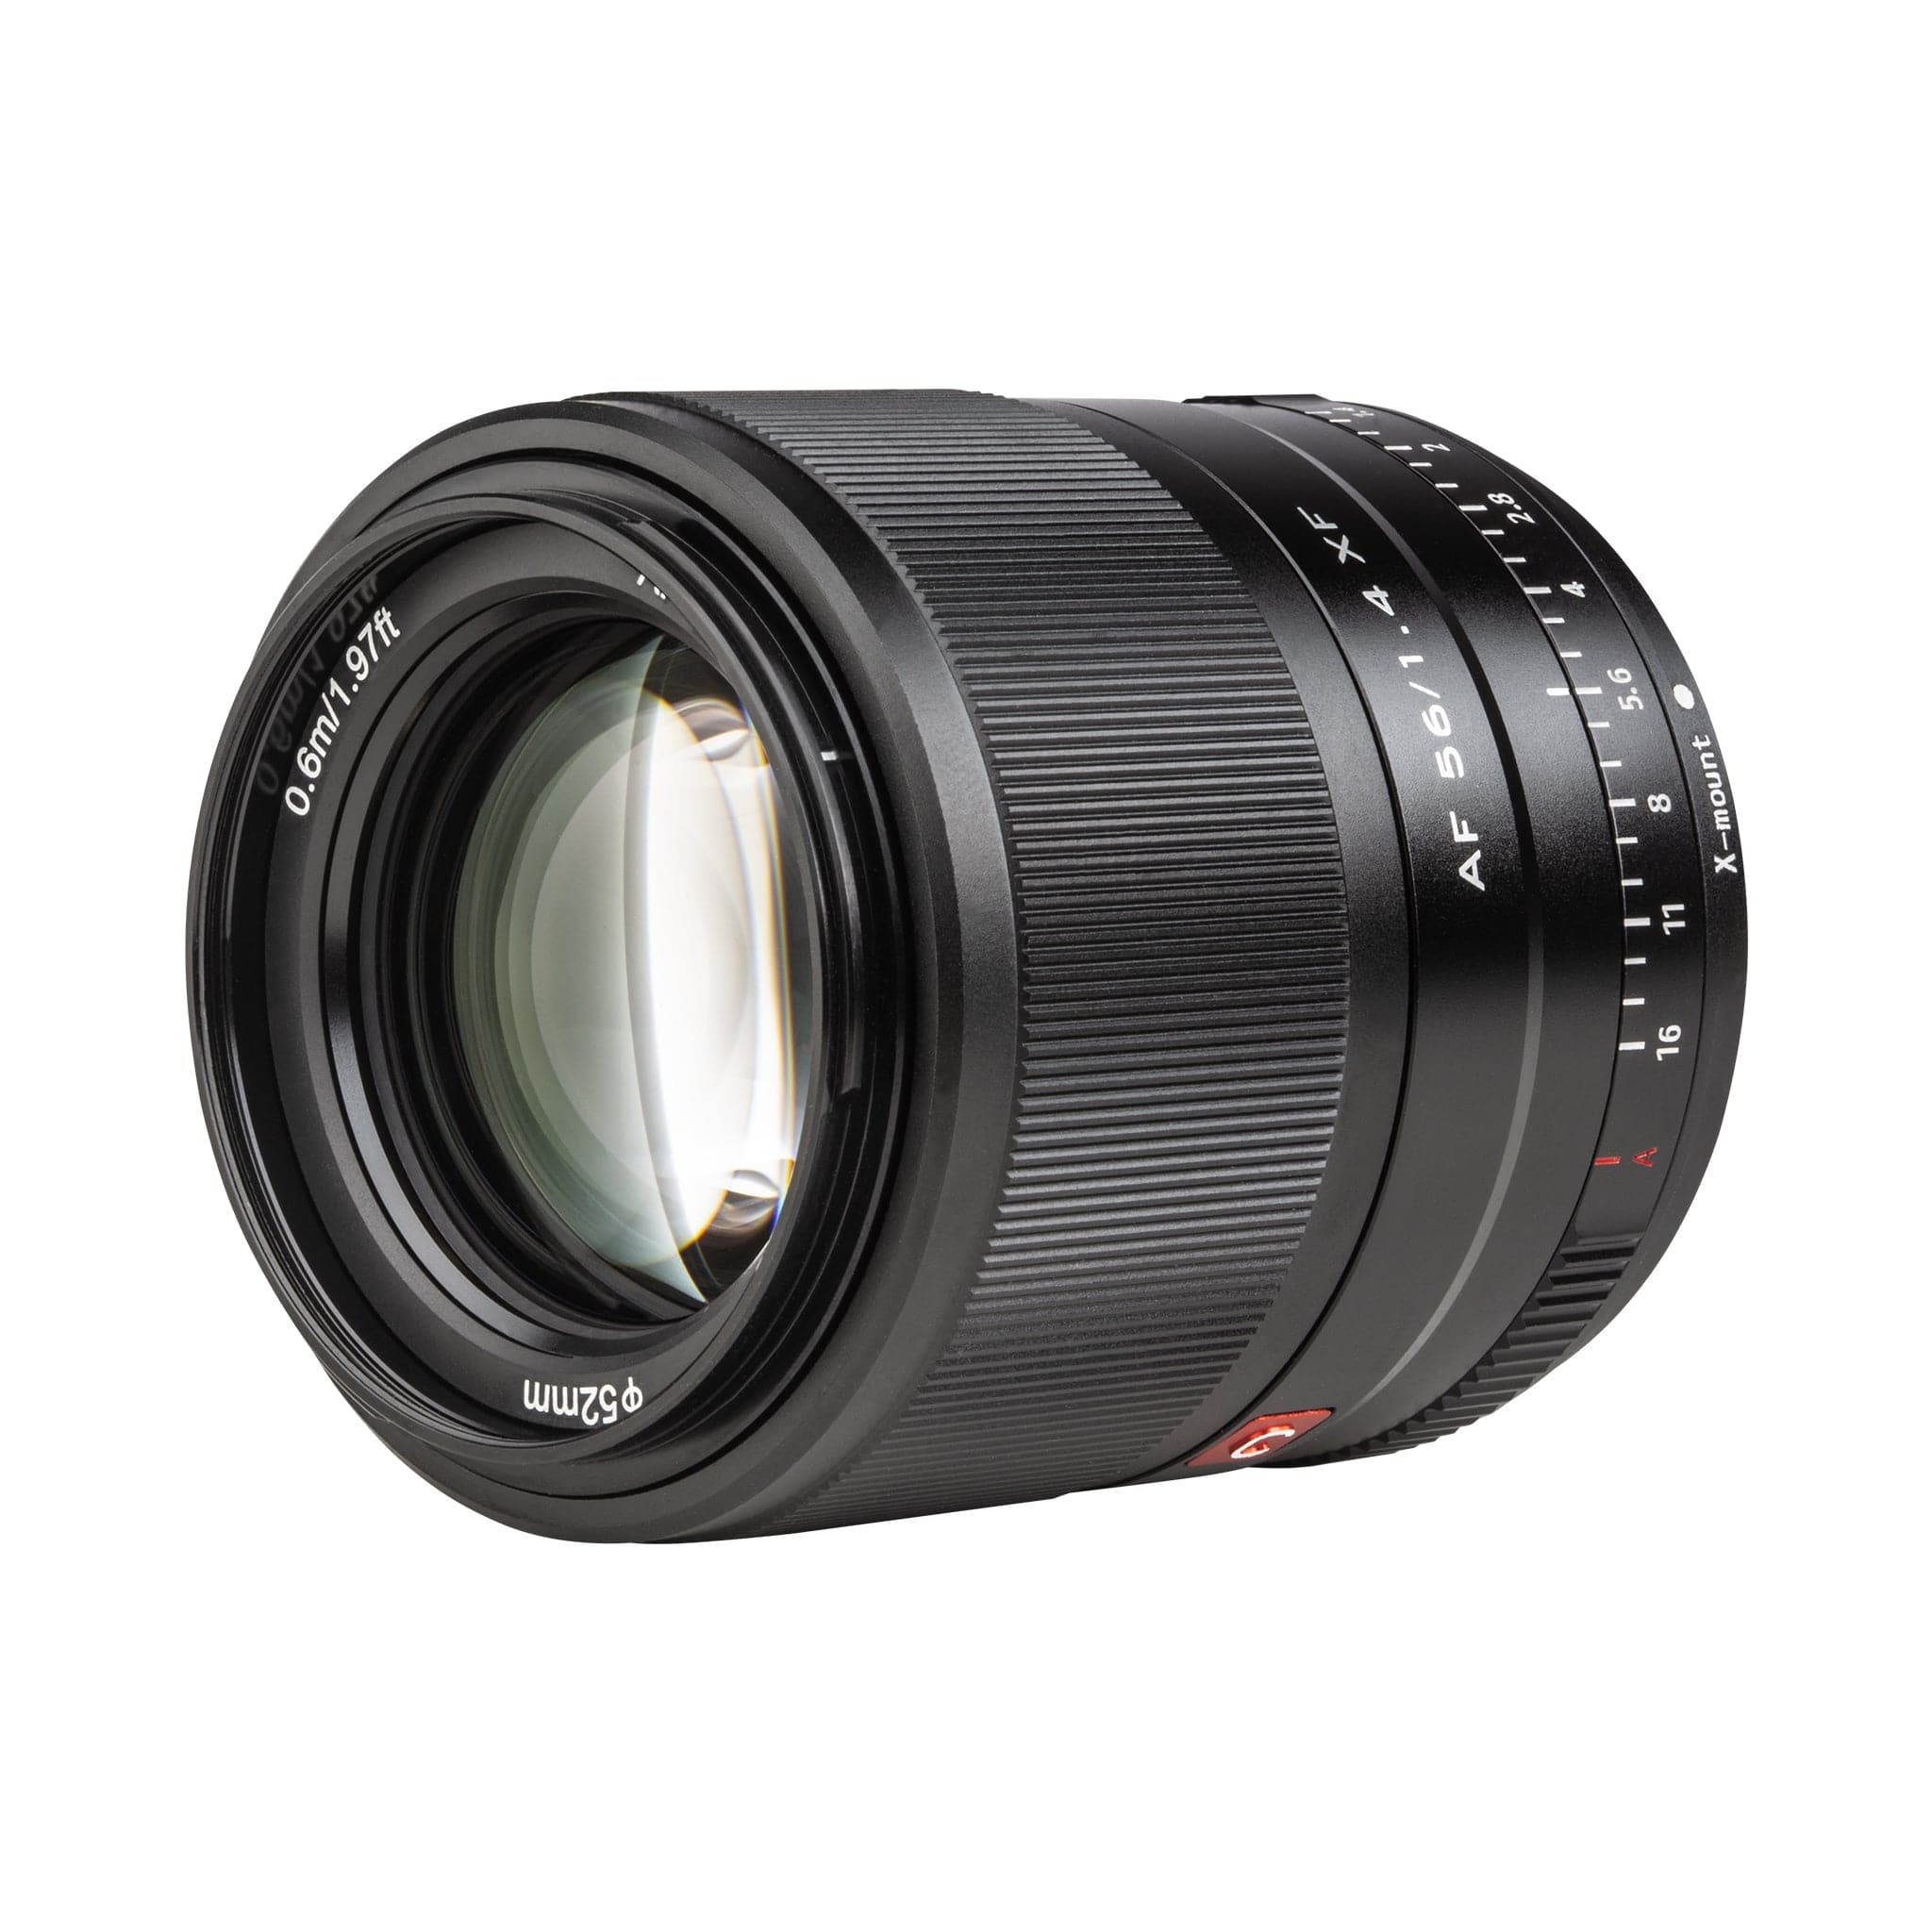 Viltrox 56mm F1.4 XF Large Aperture Autofocus Portrait Lens for Fujifi